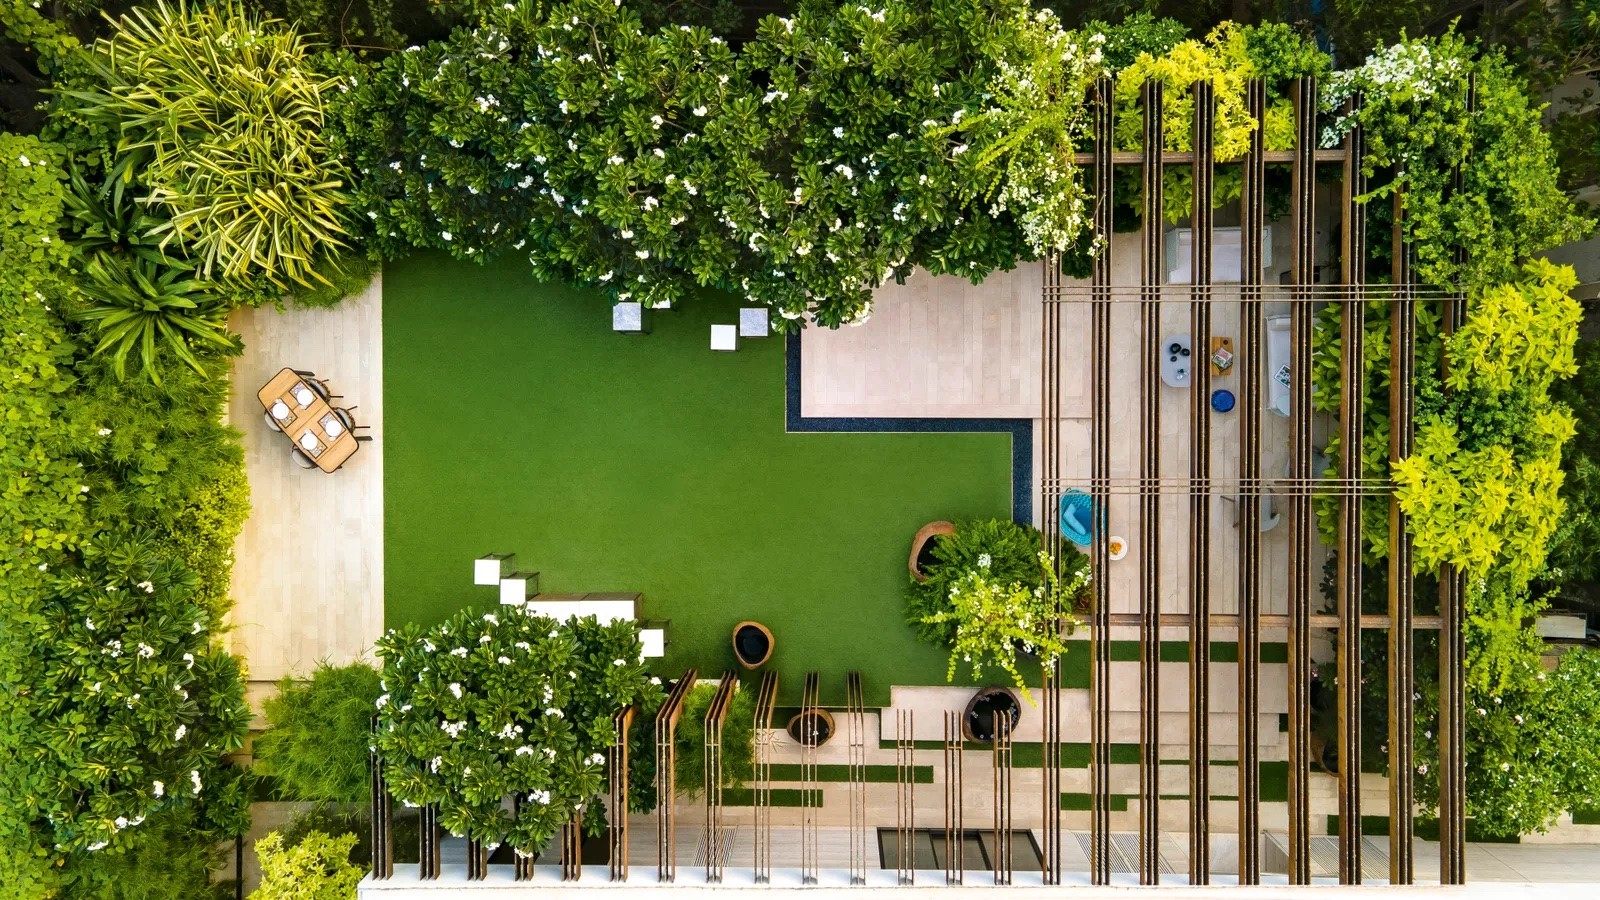 17 Best Landscape Architects & Their Work - Sheet5